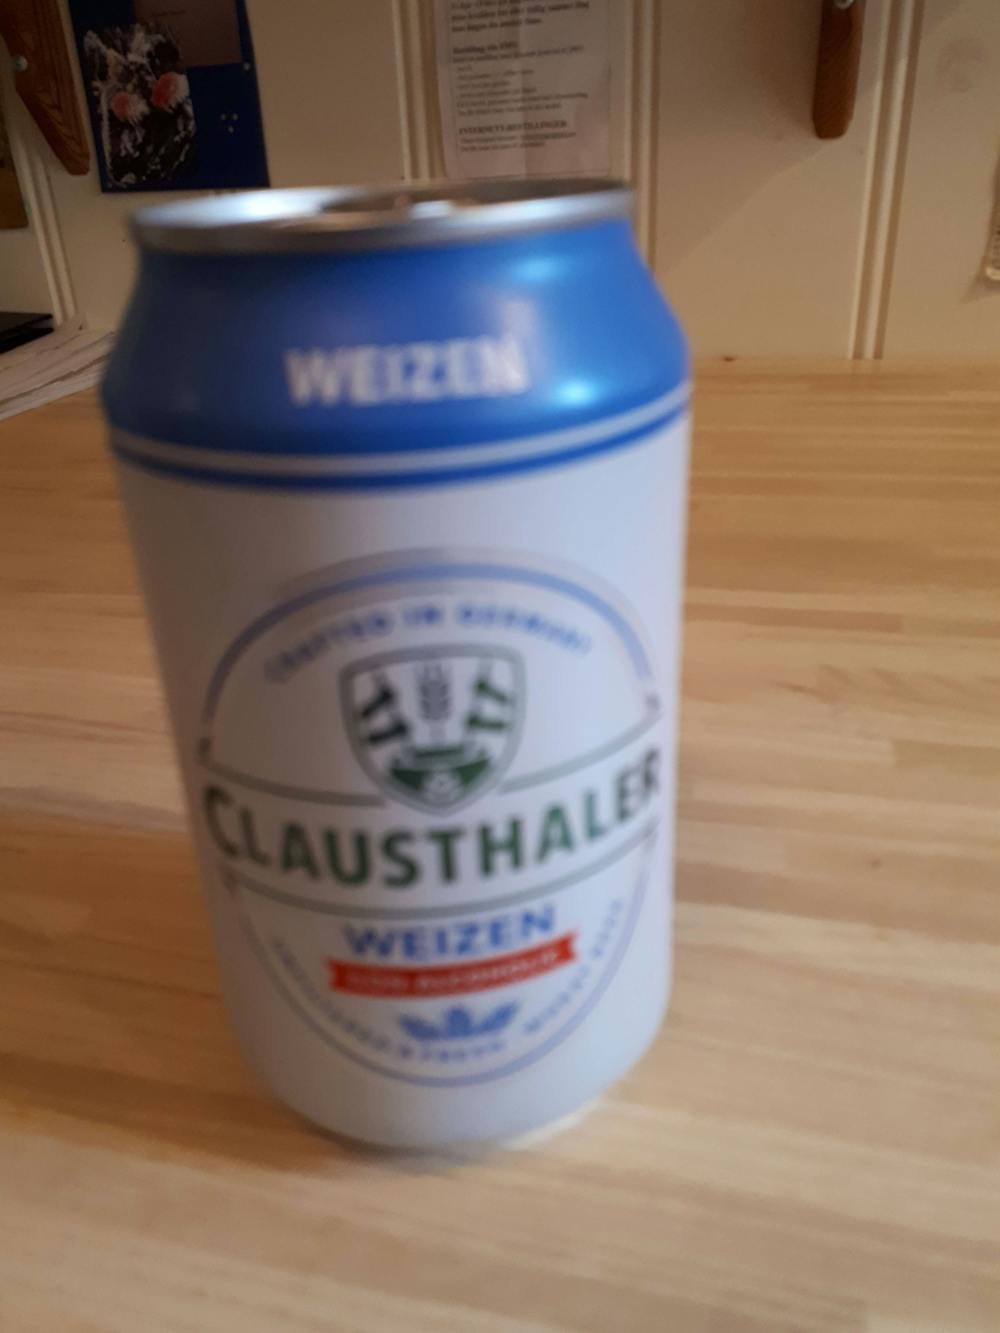 Weizen, Clausthaler